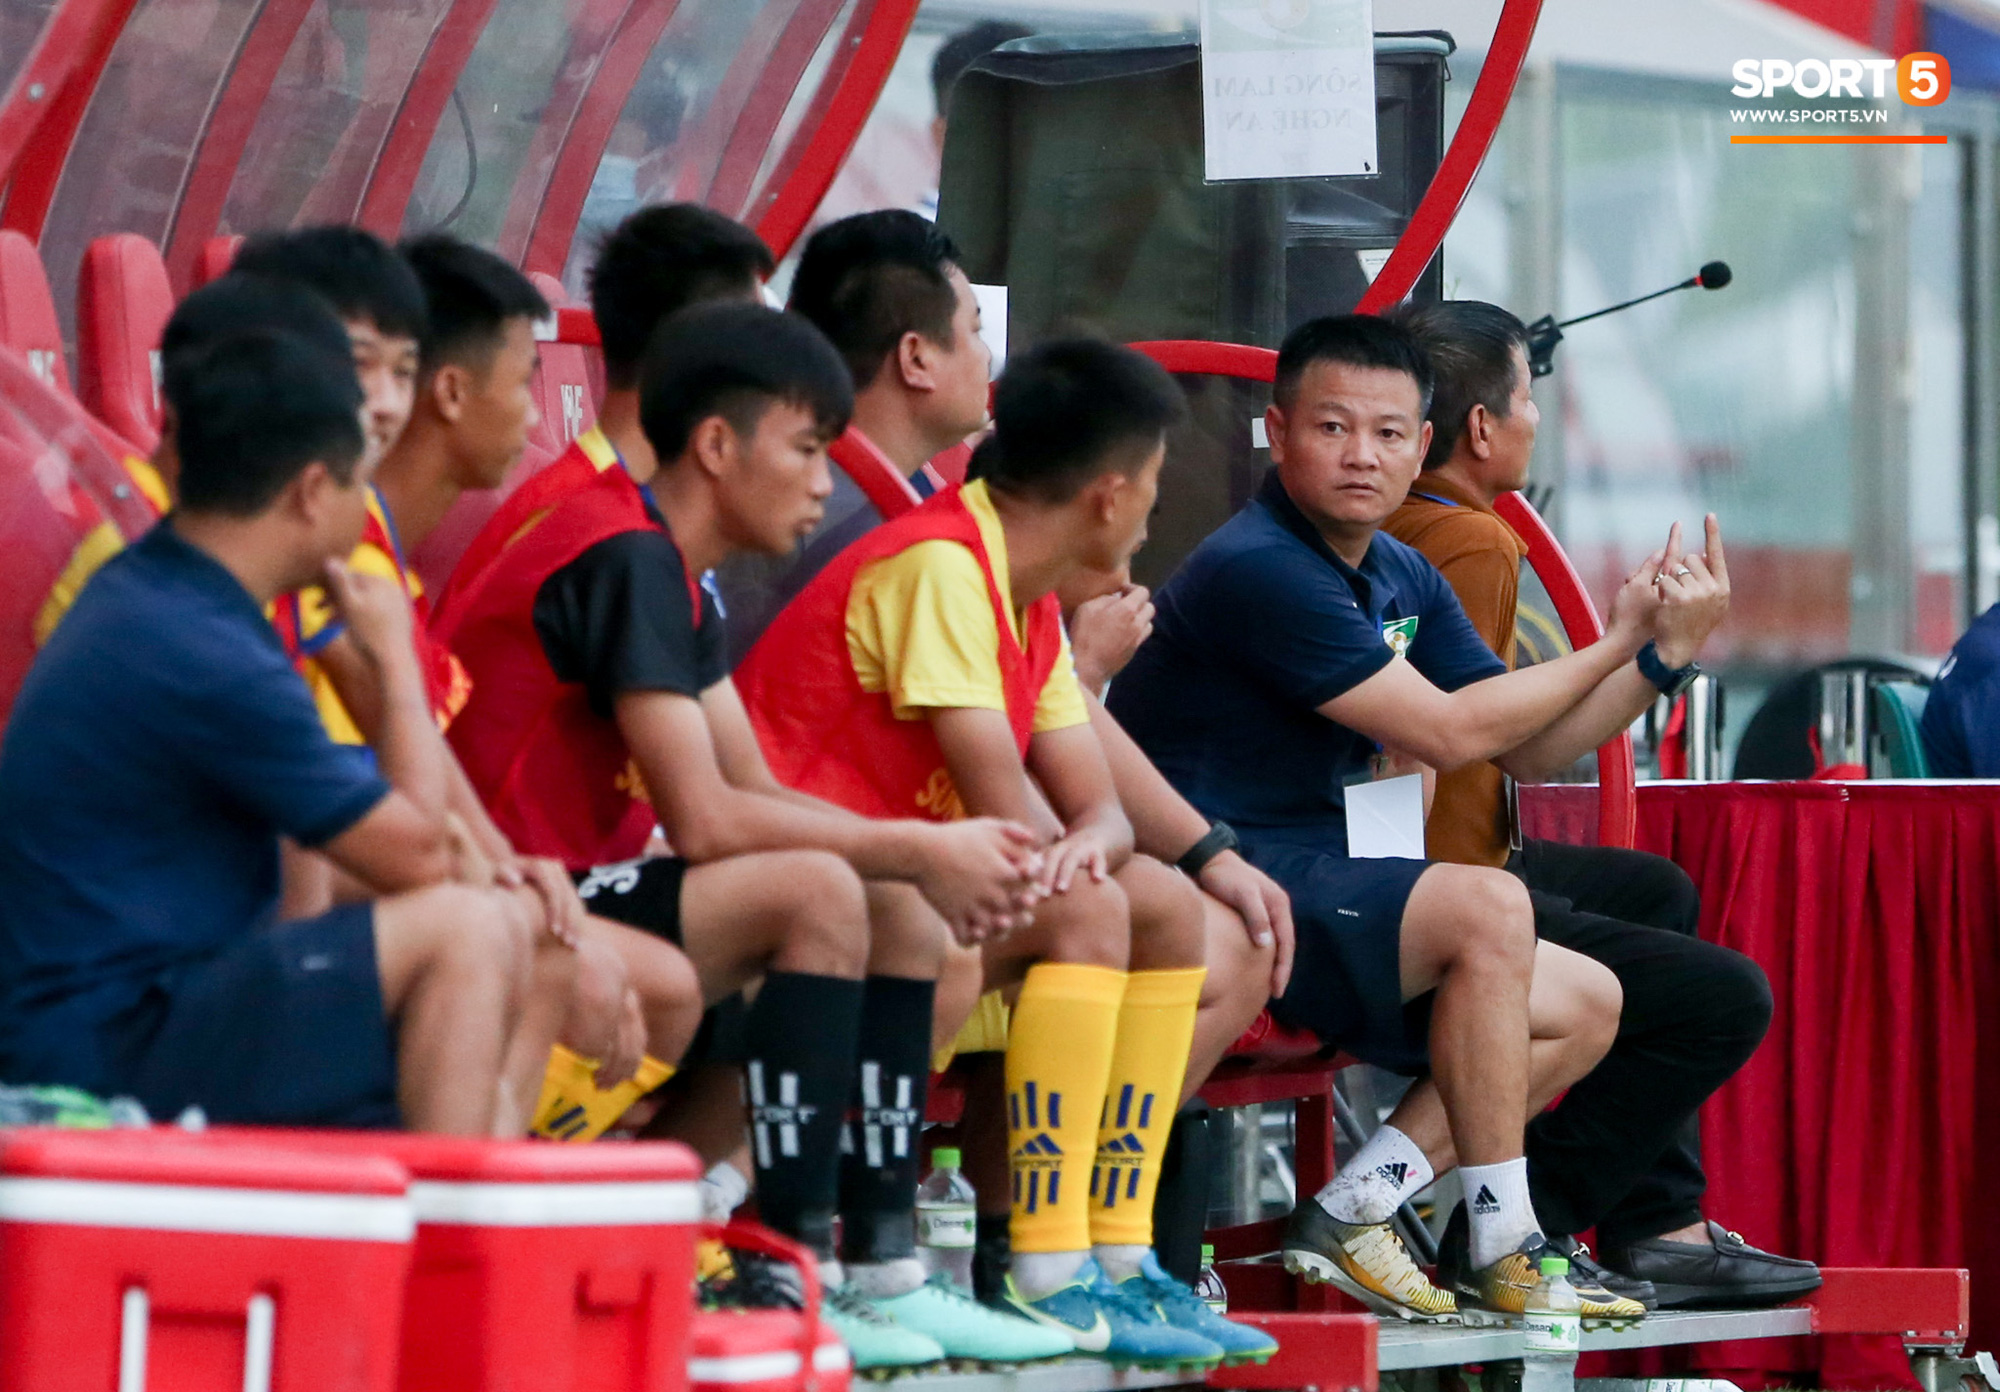 Cậu bé vàng Văn Quyến: Một đời cầu thủ dở dang đến HLV chạm tay hoá cúp ở các giải trẻ Việt Nam - Ảnh 3.